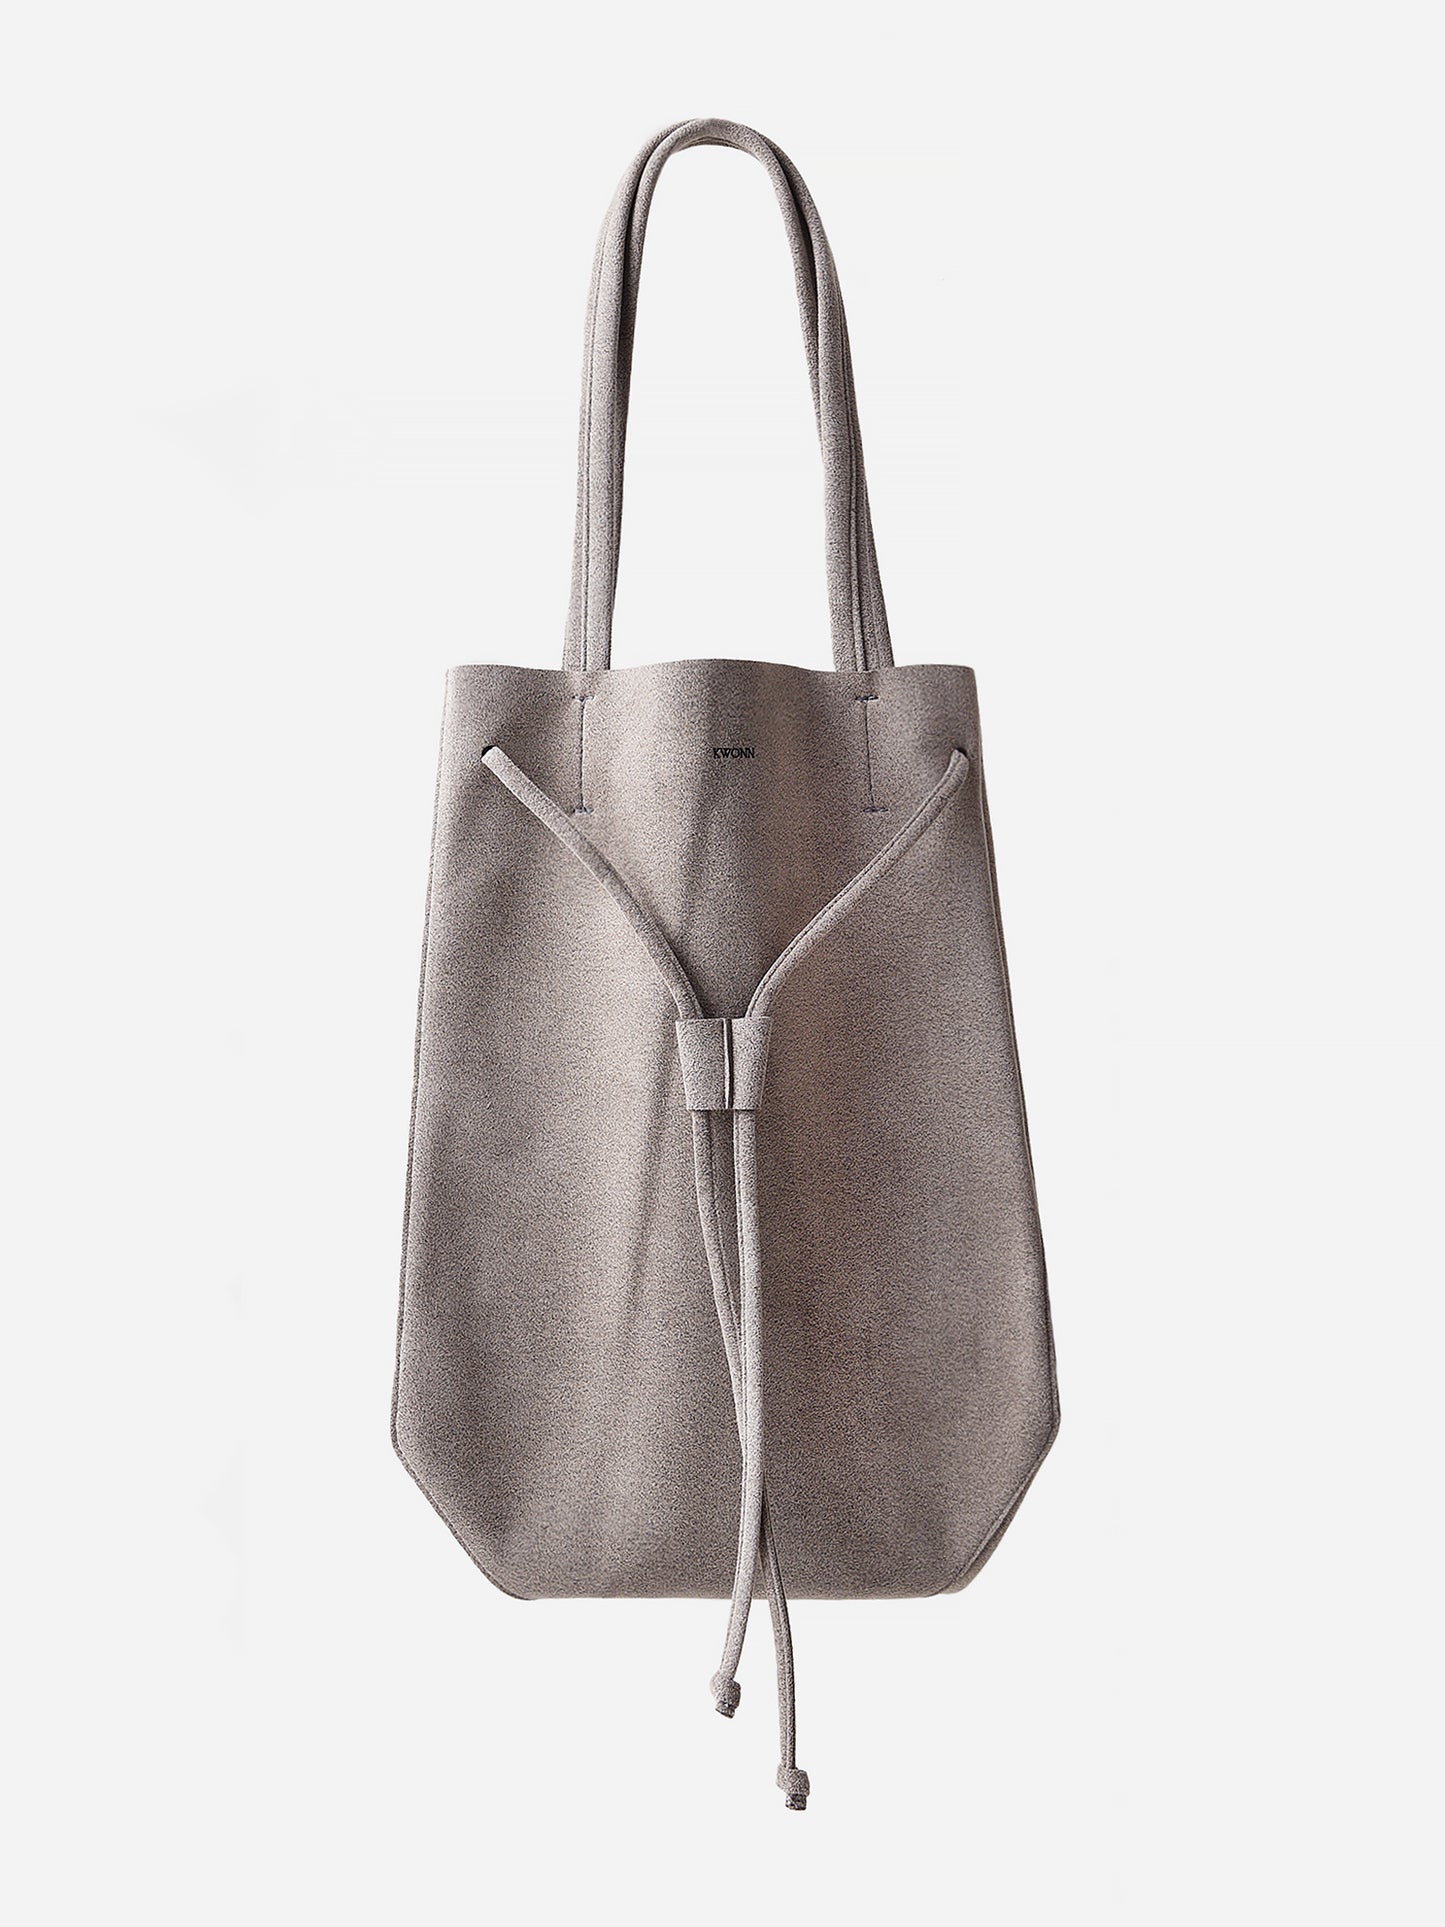 Kwonn Women's Grey Shopper Bag